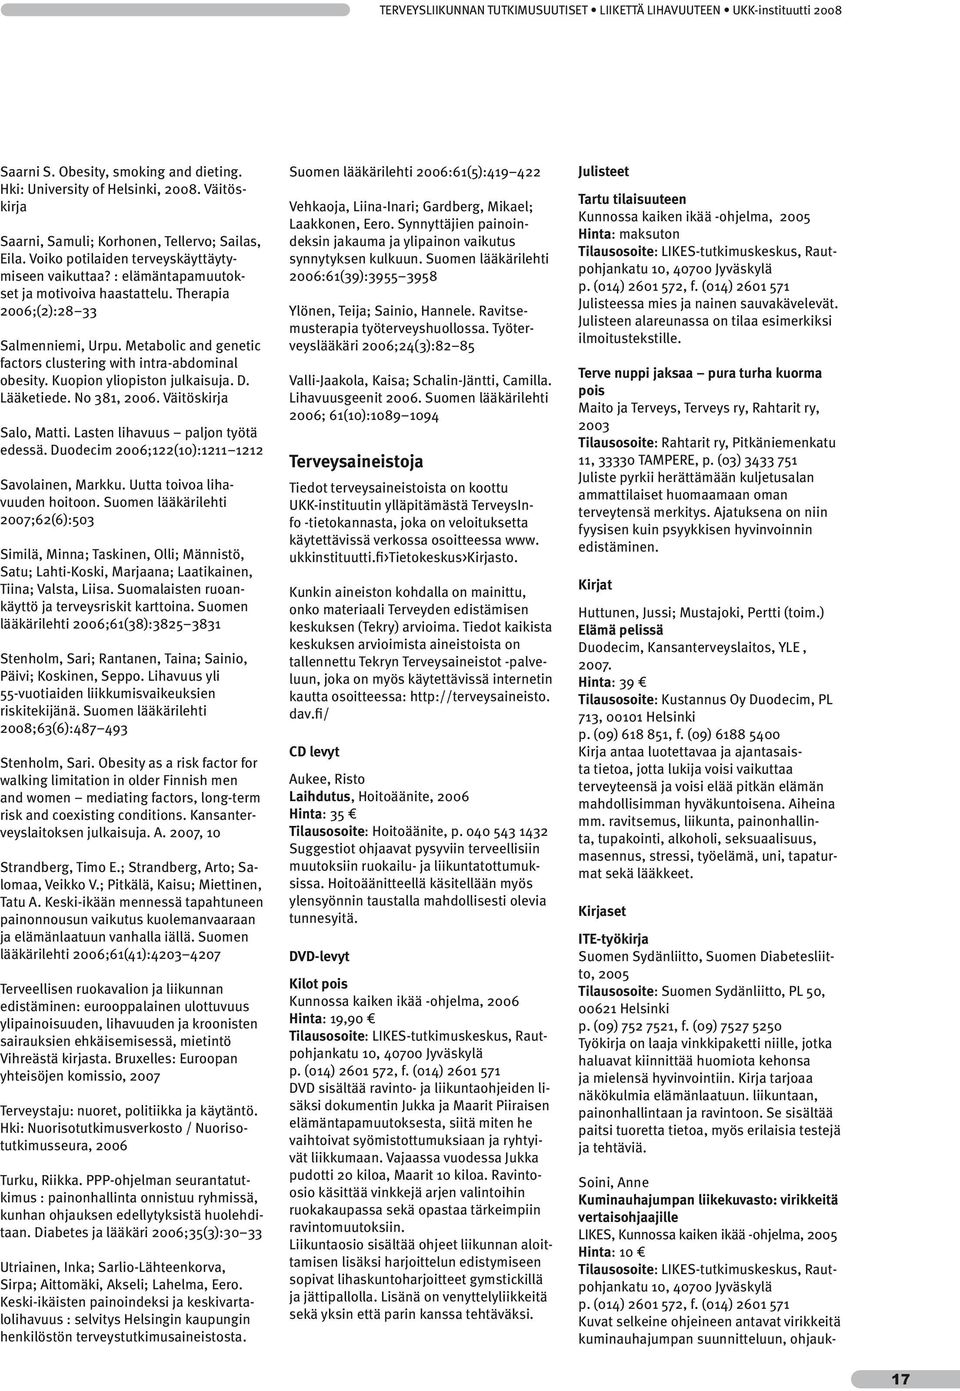 Therapia 2006;(2):28 33 Salmenniemi, Urpu. Metabolic and genetic factors clustering with intra-abdominal obesity. Kuopion yliopiston julkaisuja. D. Lääketiede. No 381, 2006. Väitöskirja Salo, Matti.